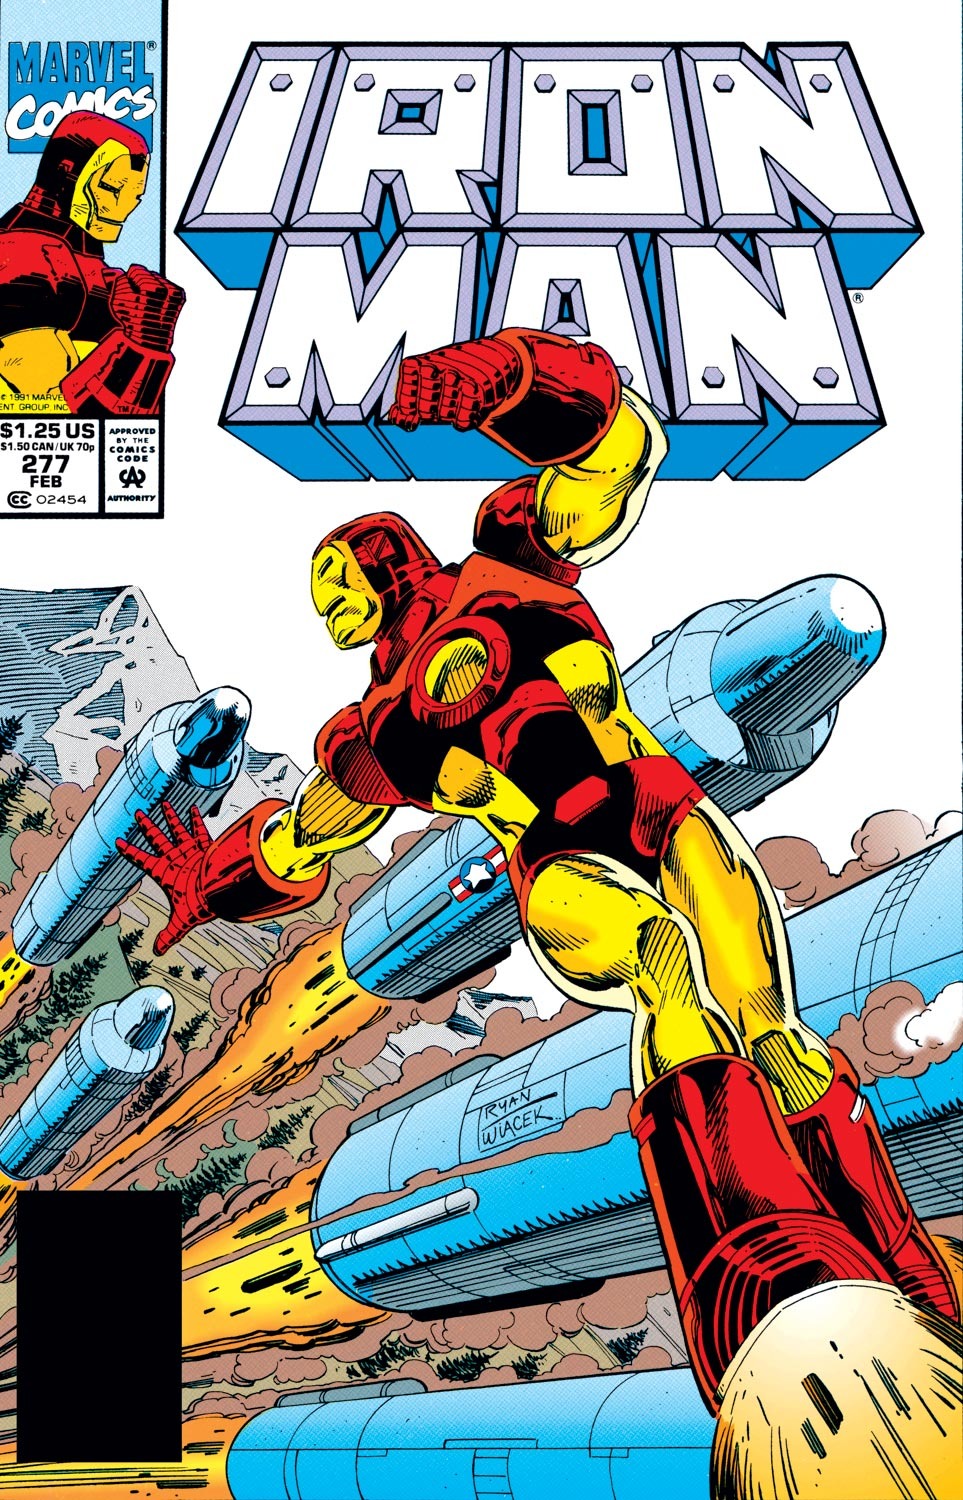 iron man 1 wiki